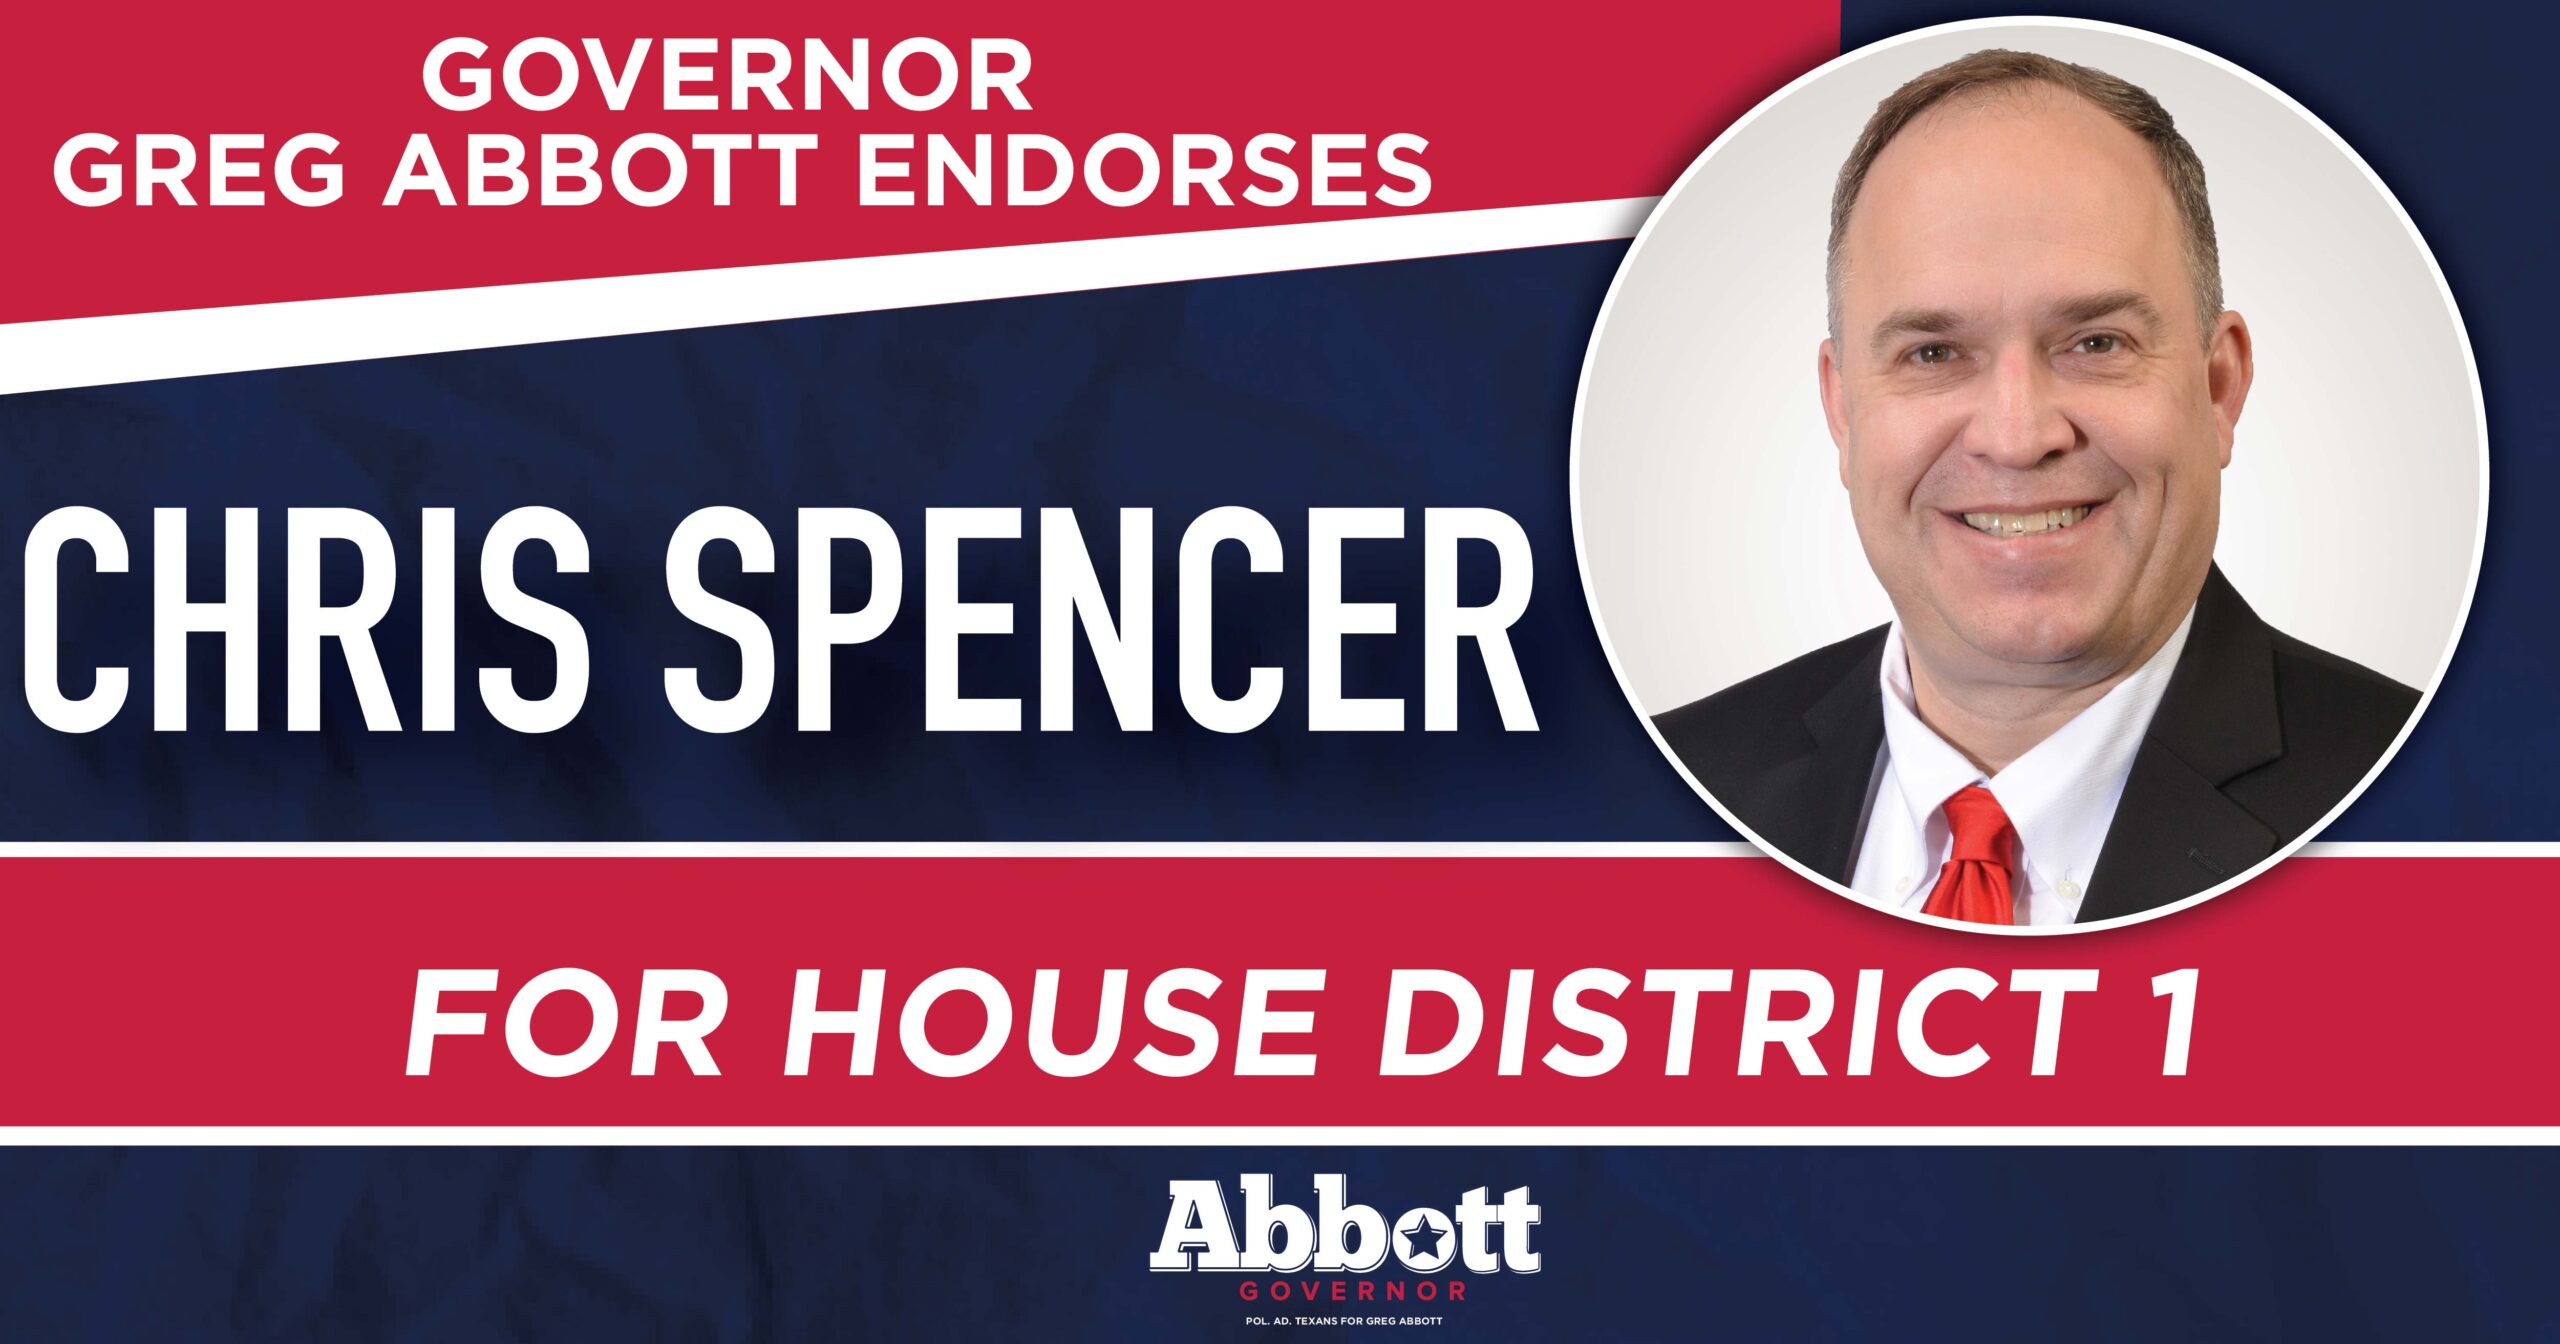 Governor Abbott Endorses Chris Spencer For House District 1 - Greg Abbott